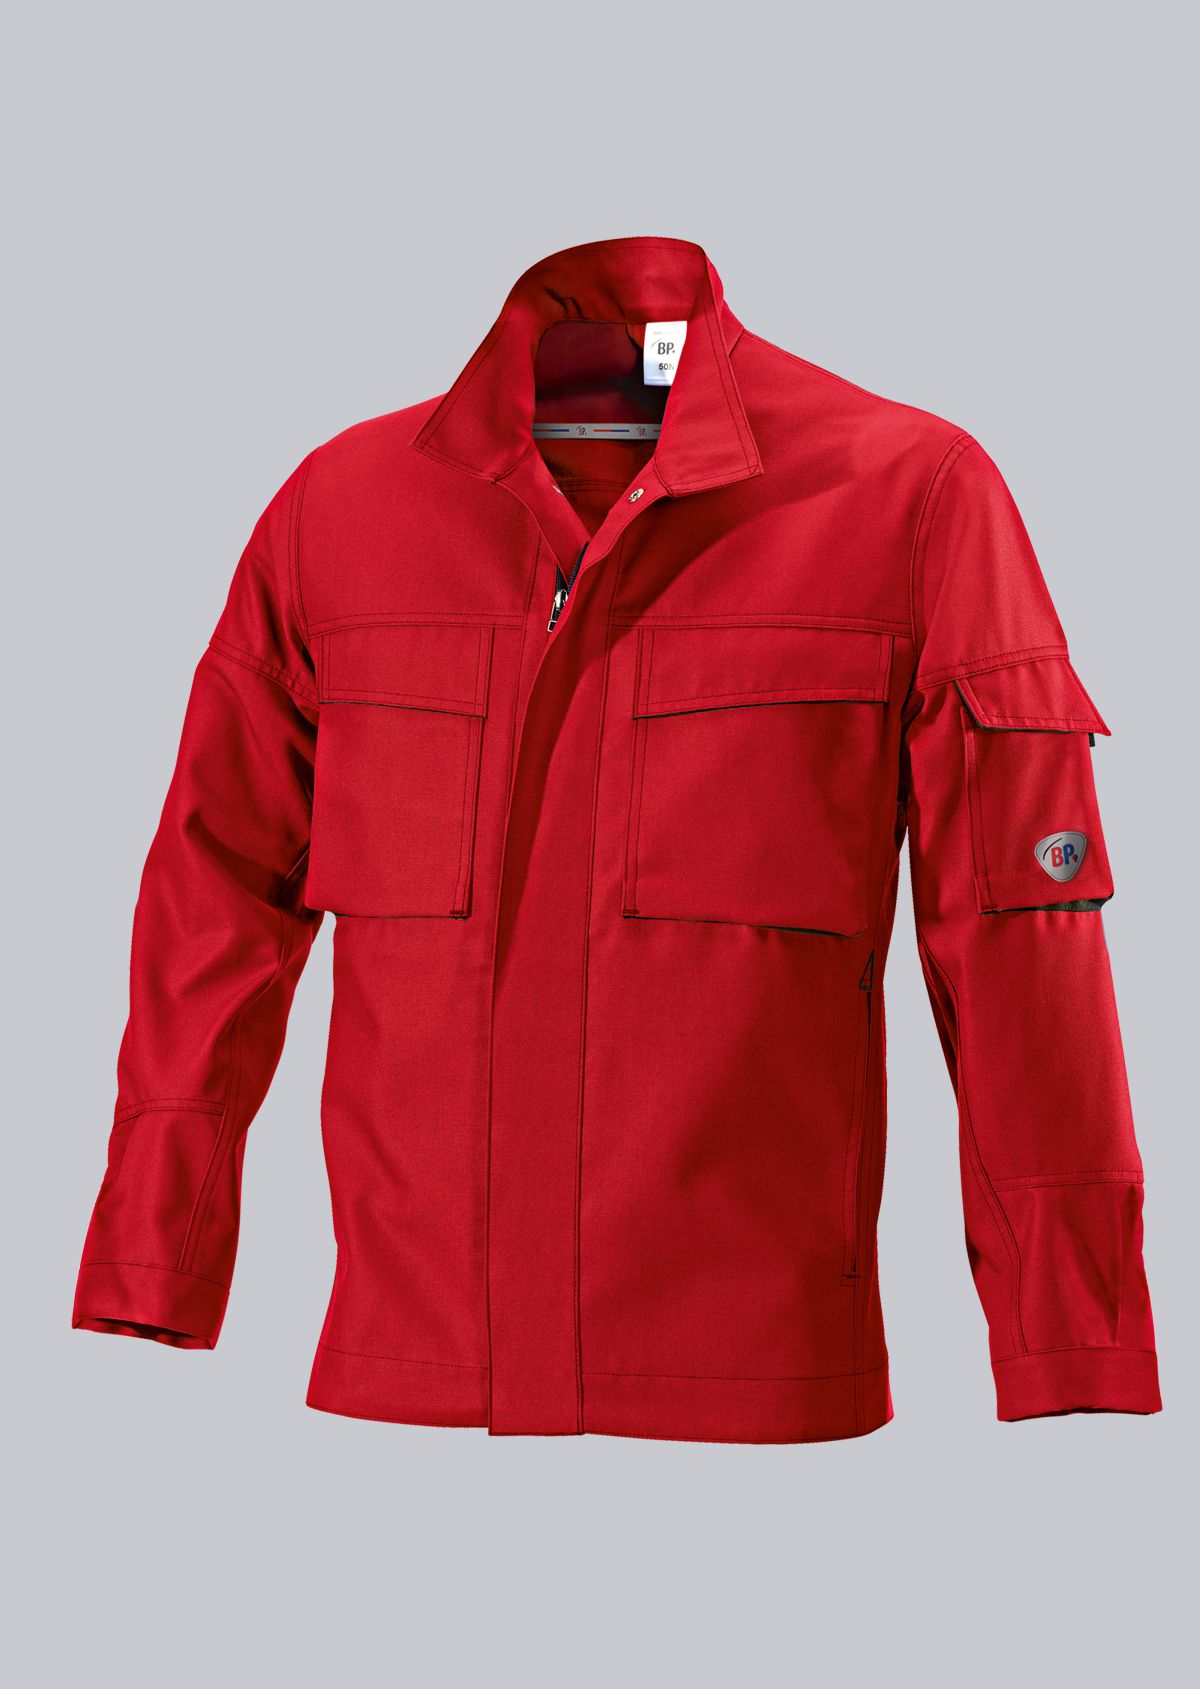 BP® Durable work jacket